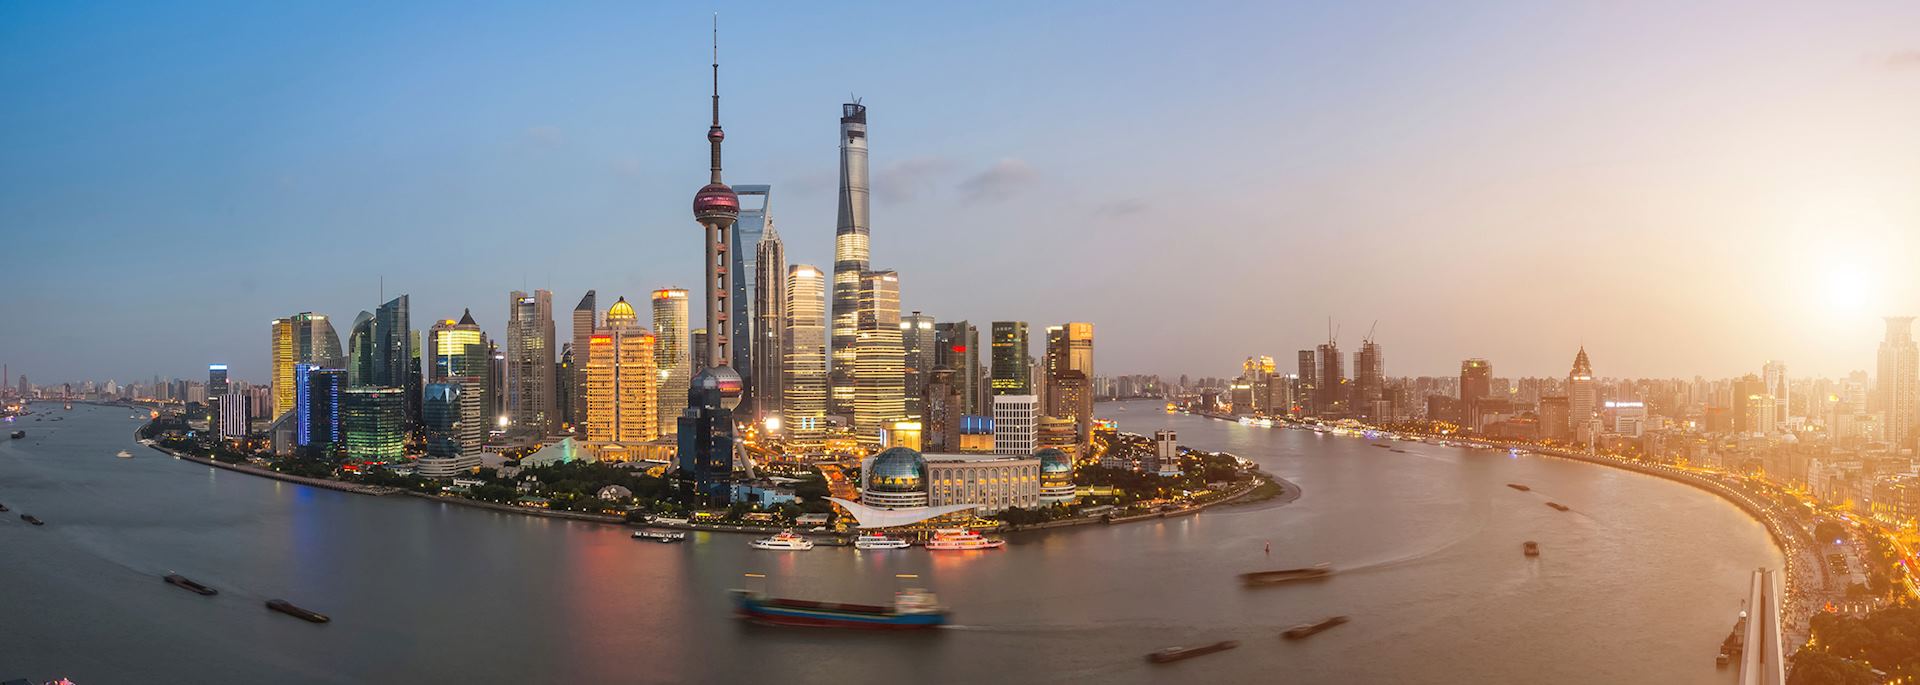 Panoramic view of Shanghai